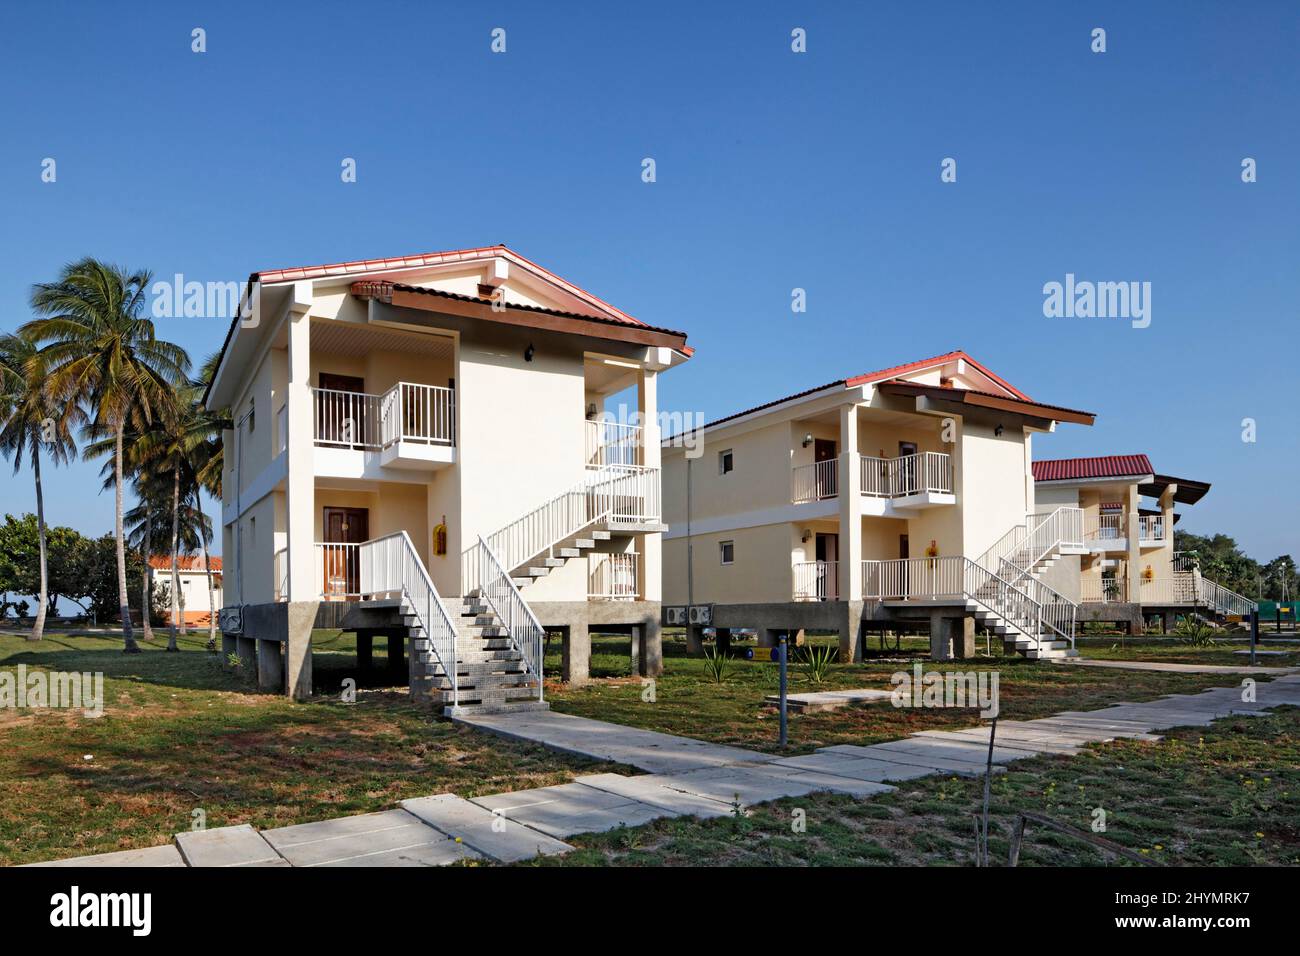 Bunglows mit vier Zimmern auf Stelzen, Hotel, einfach, Bungalowanlage, Maria la Gorda, Pinar del Rio, Kuba, Karibik Stockfoto